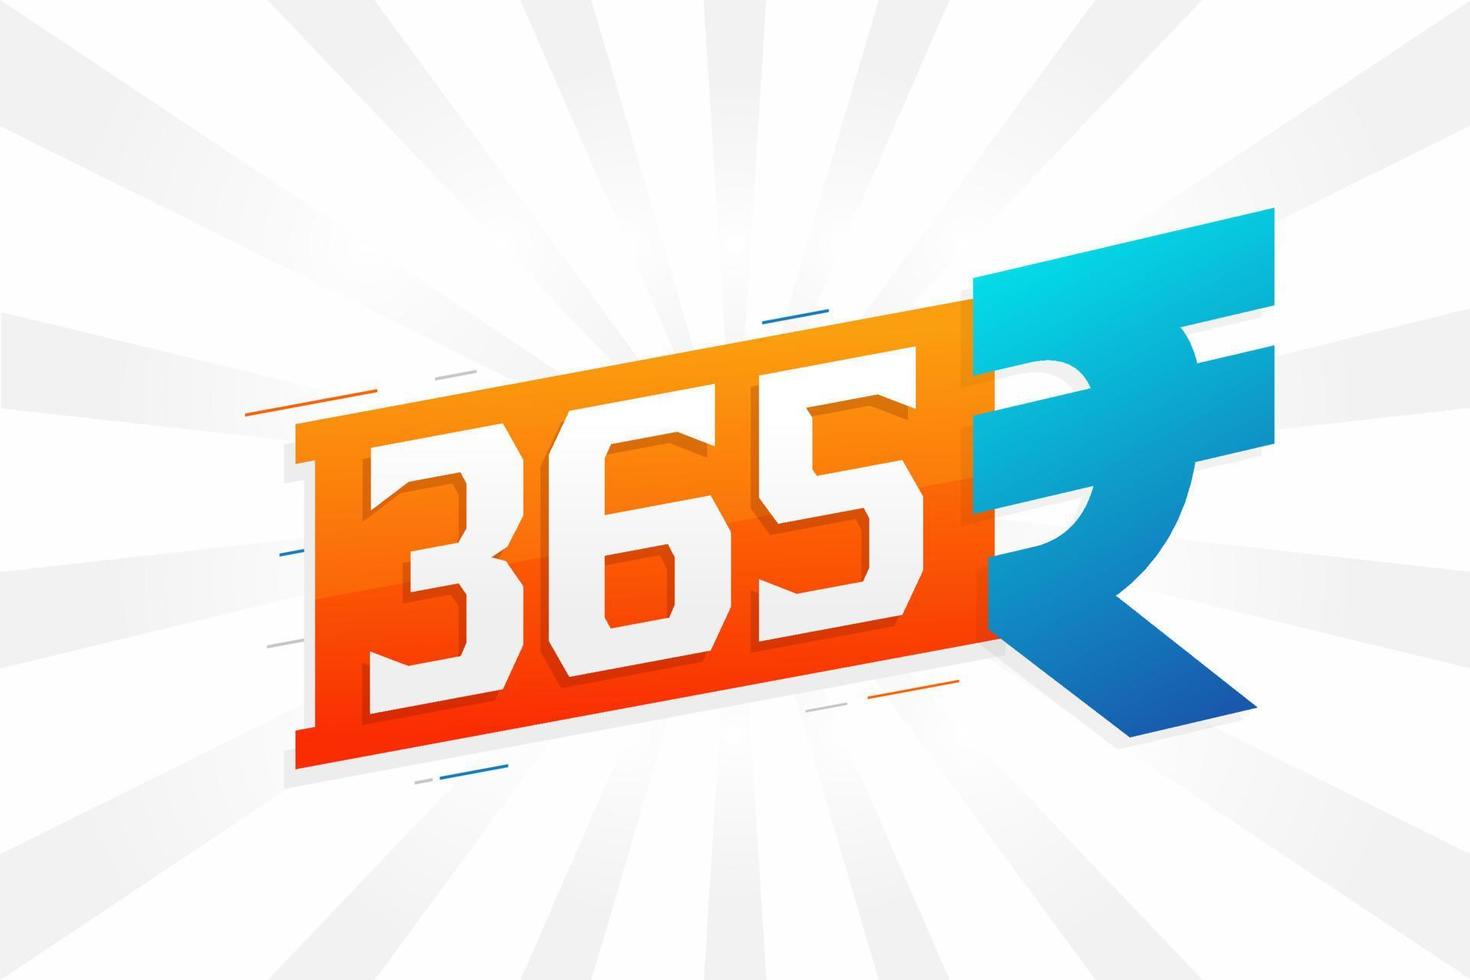 Image vectorielle de texte en gras symbole 365 roupies. Illustration vectorielle de signe de devise roupie indienne 365 vecteur